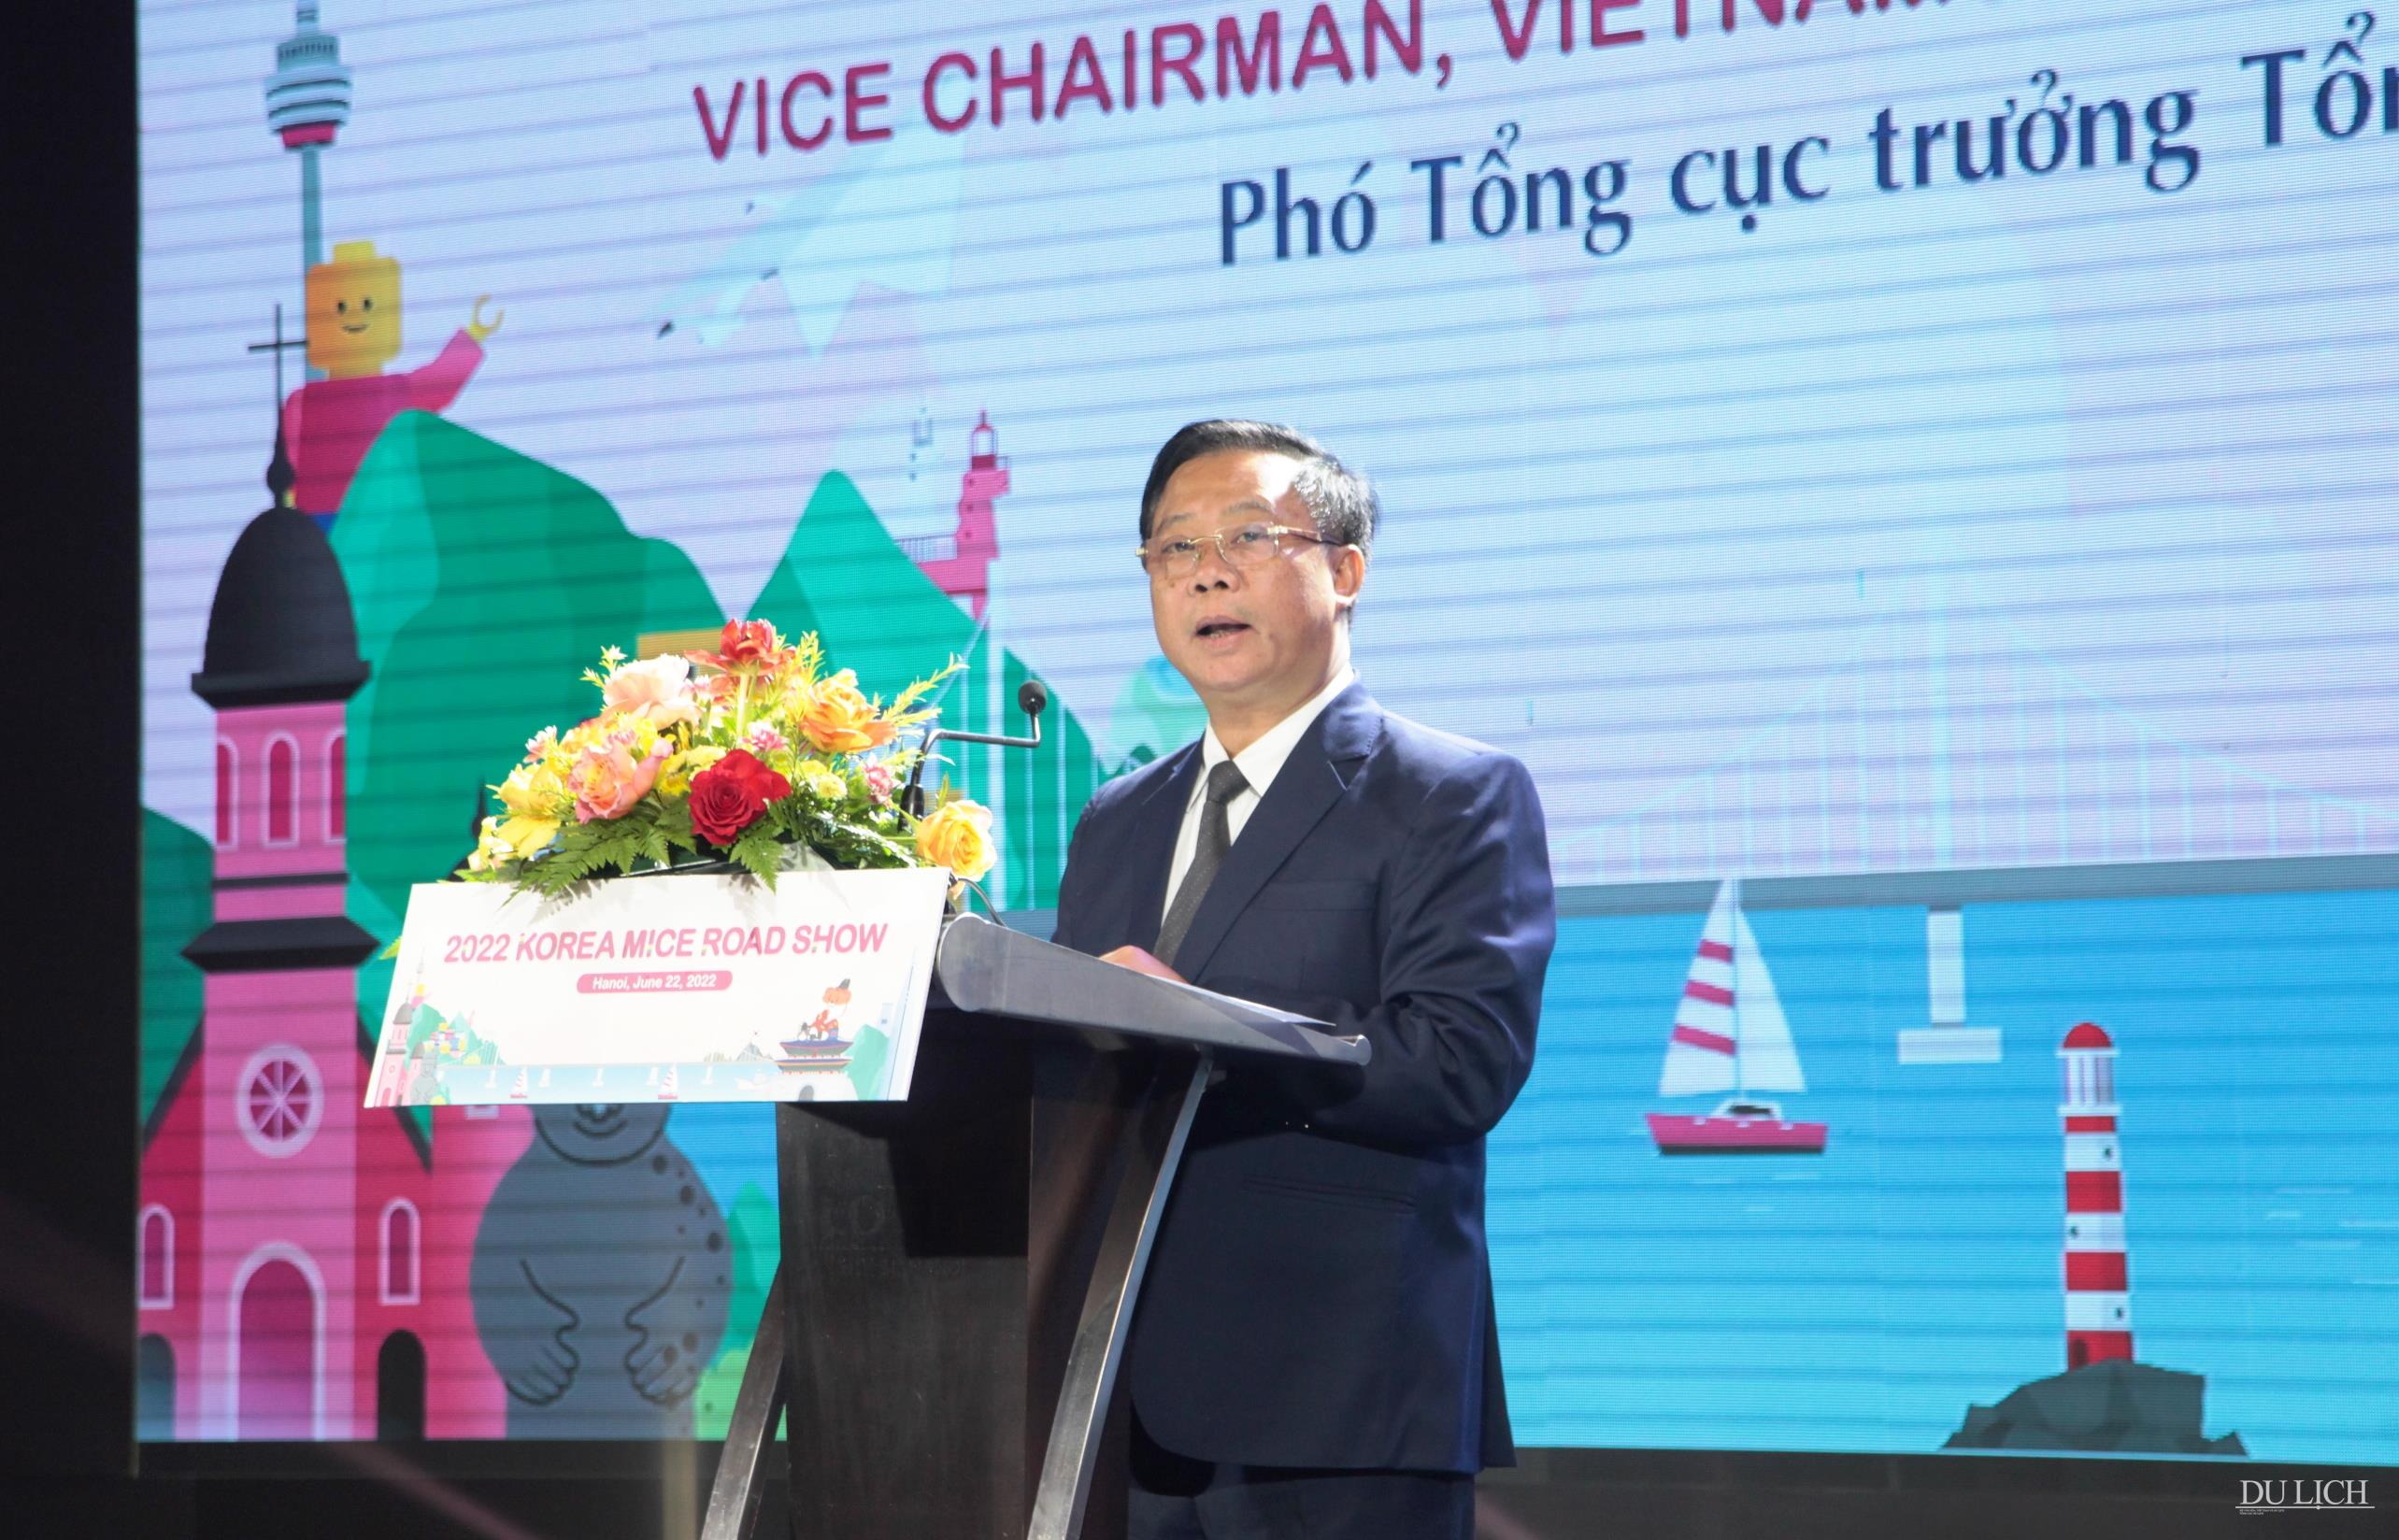 Phó Tổng cục trưởng TCDL Việt Nam Phạm Văn Thủy phát biểu chào mừng